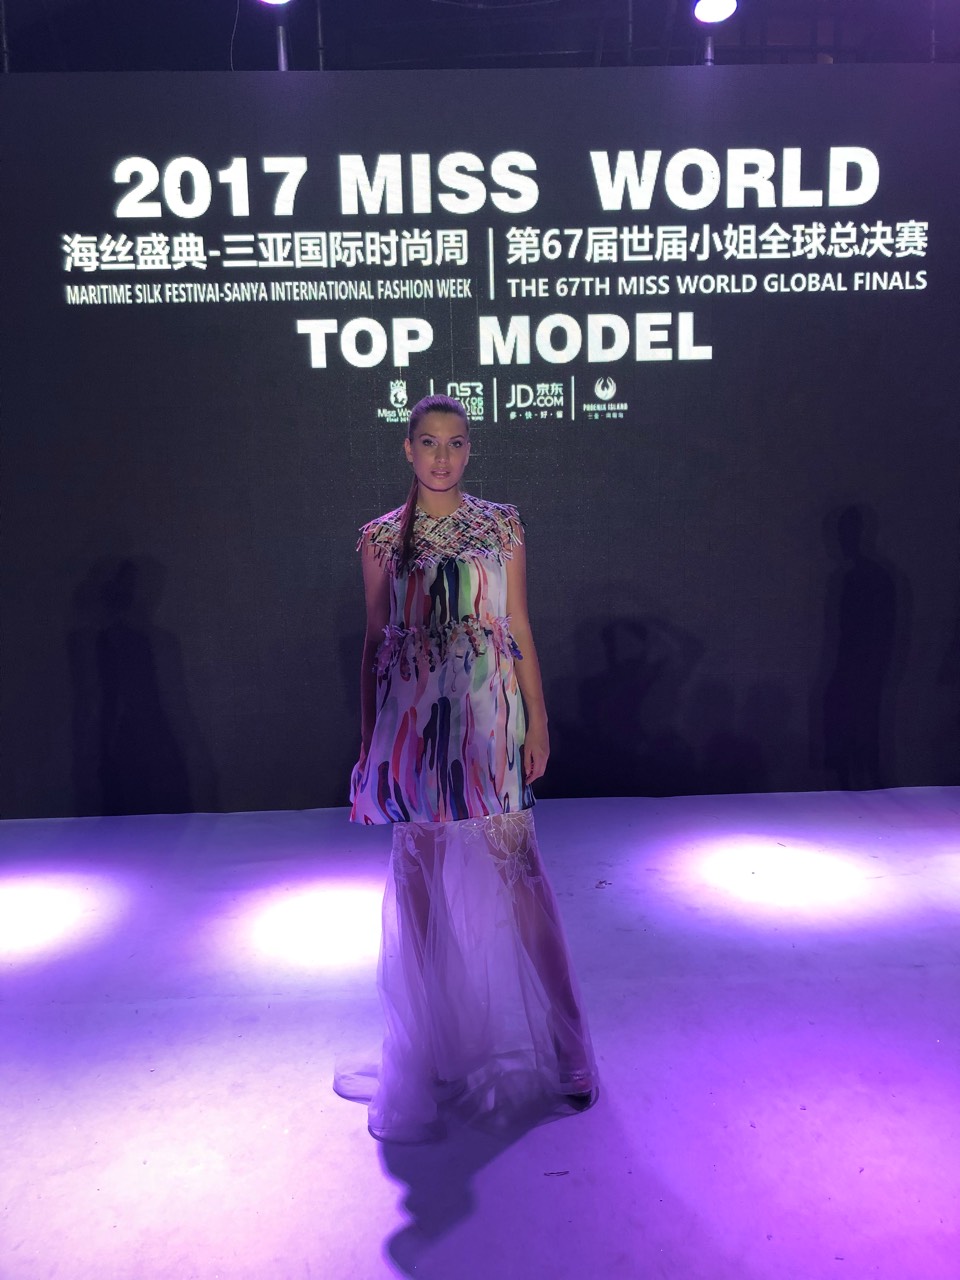 Model - candidatas a miss world 2017, fast track: top model. ganadora: miss nigeria, segunda classificada para top 40 de mw. - Página 7 Image-0-02-06-cf51451c0cabbdf29f914fabfa7f1a792ddeac6db9a5d30fa91be6e7e957dcd9-V